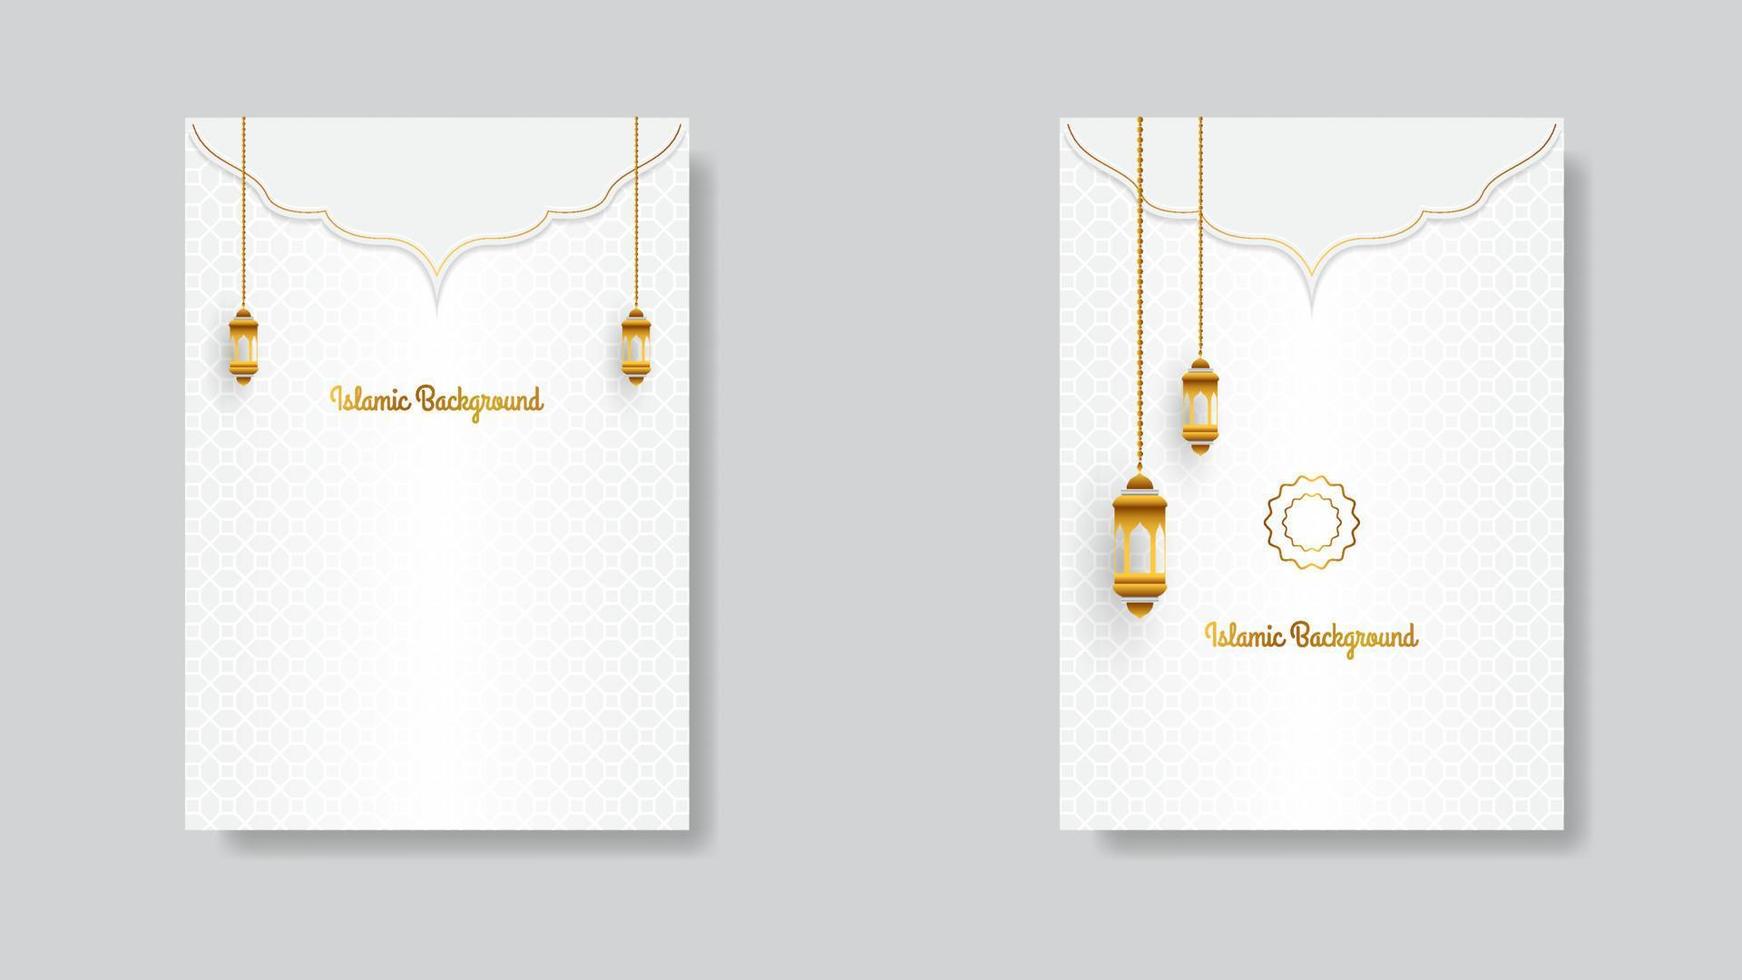 Islamitisch poster ontwerp in wit en goud met realistisch decoratie. vector illustratie